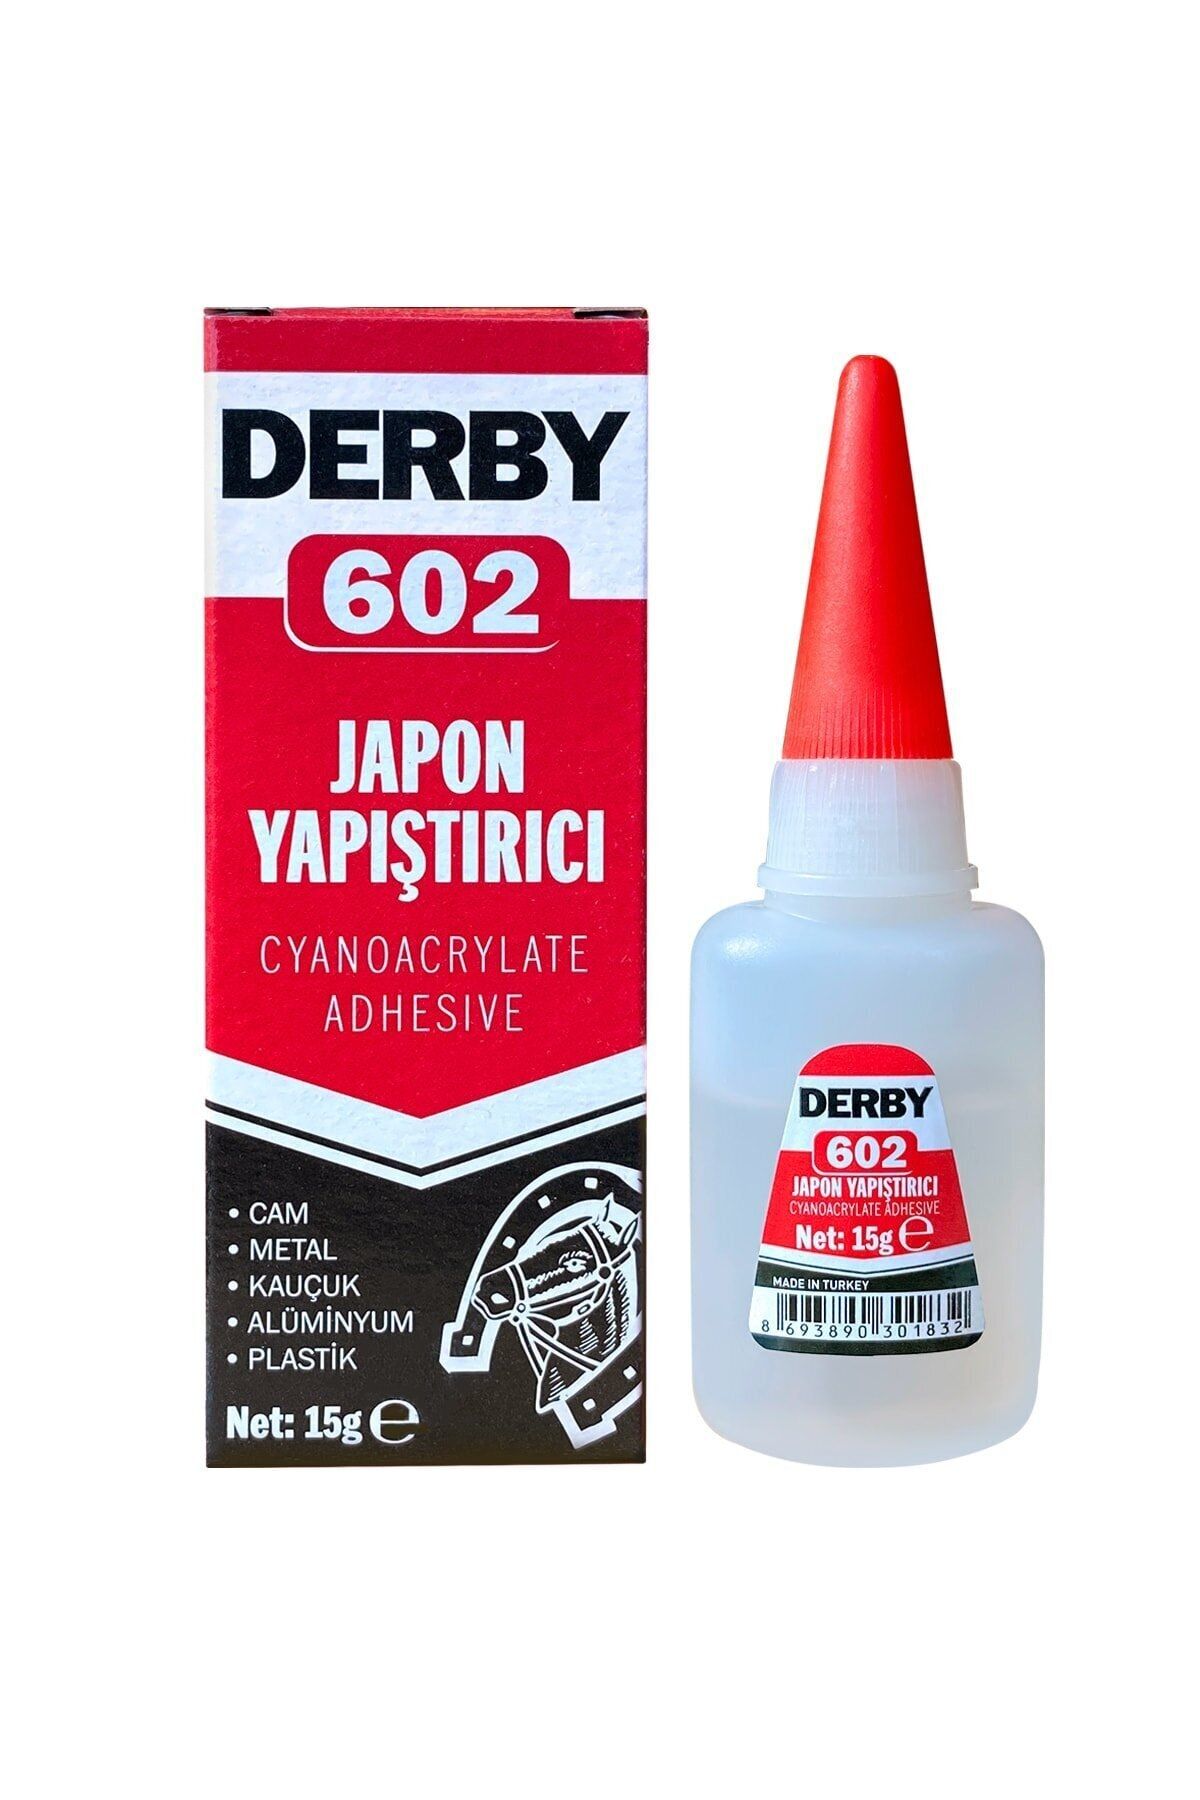 Derby 602 Genel Amaçlı Japon Yapıştırıcı 15 Gr.